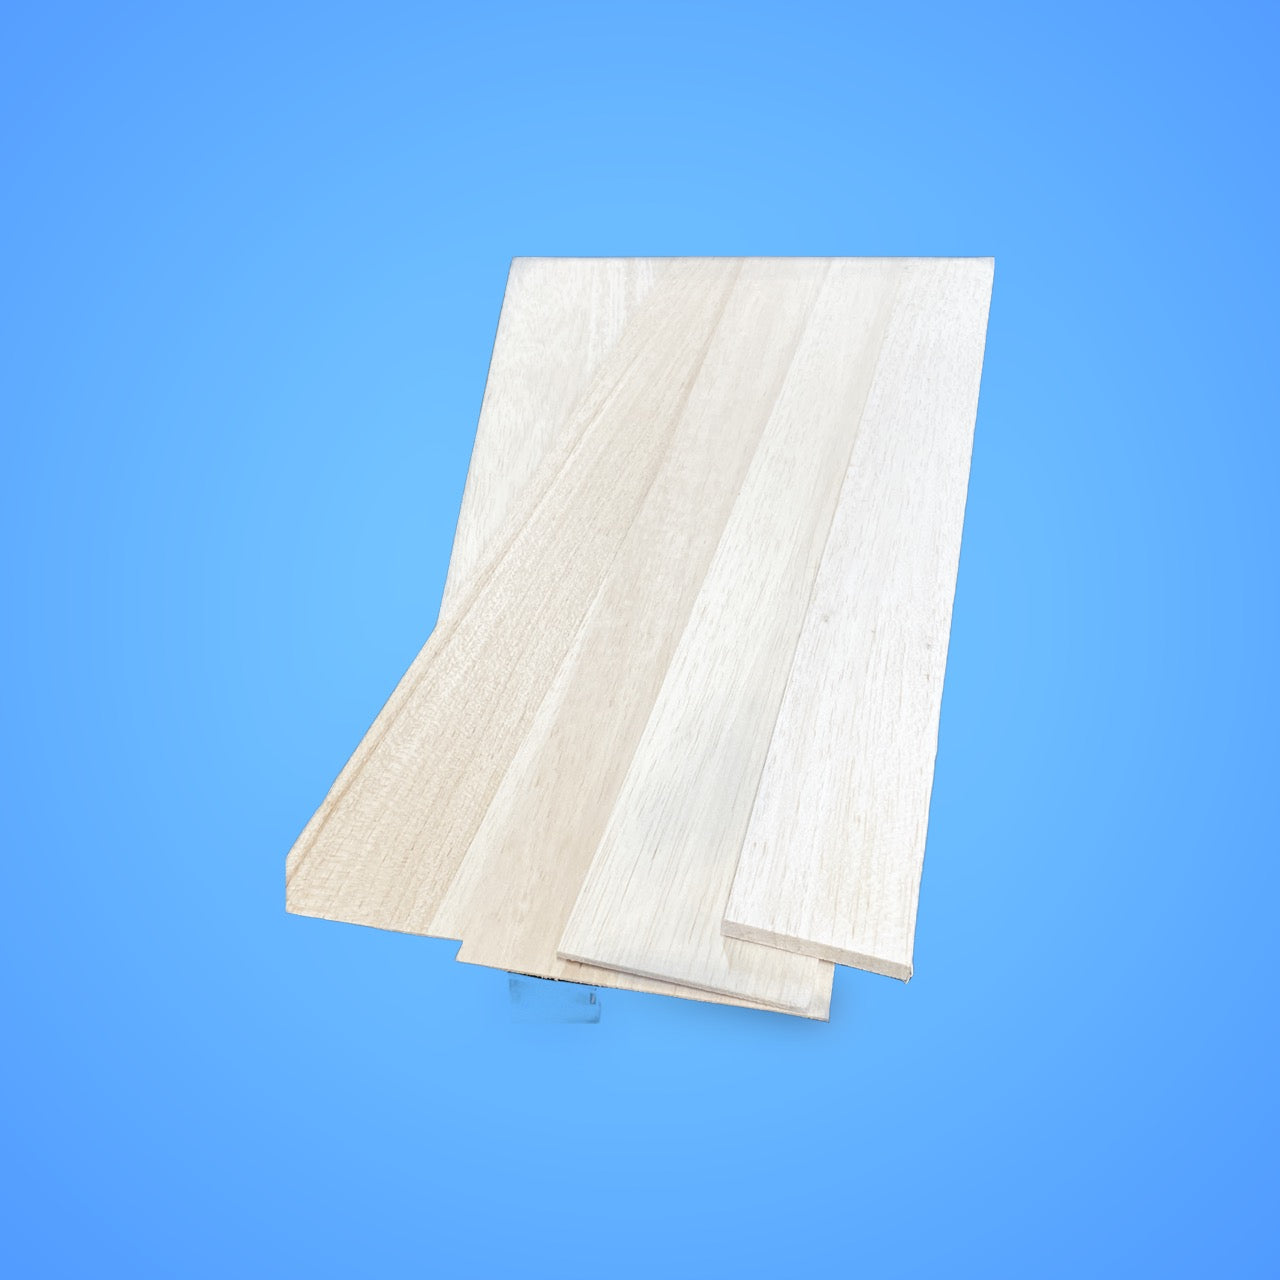 1/2 x 3 x 48 Balsa Wood Sheets